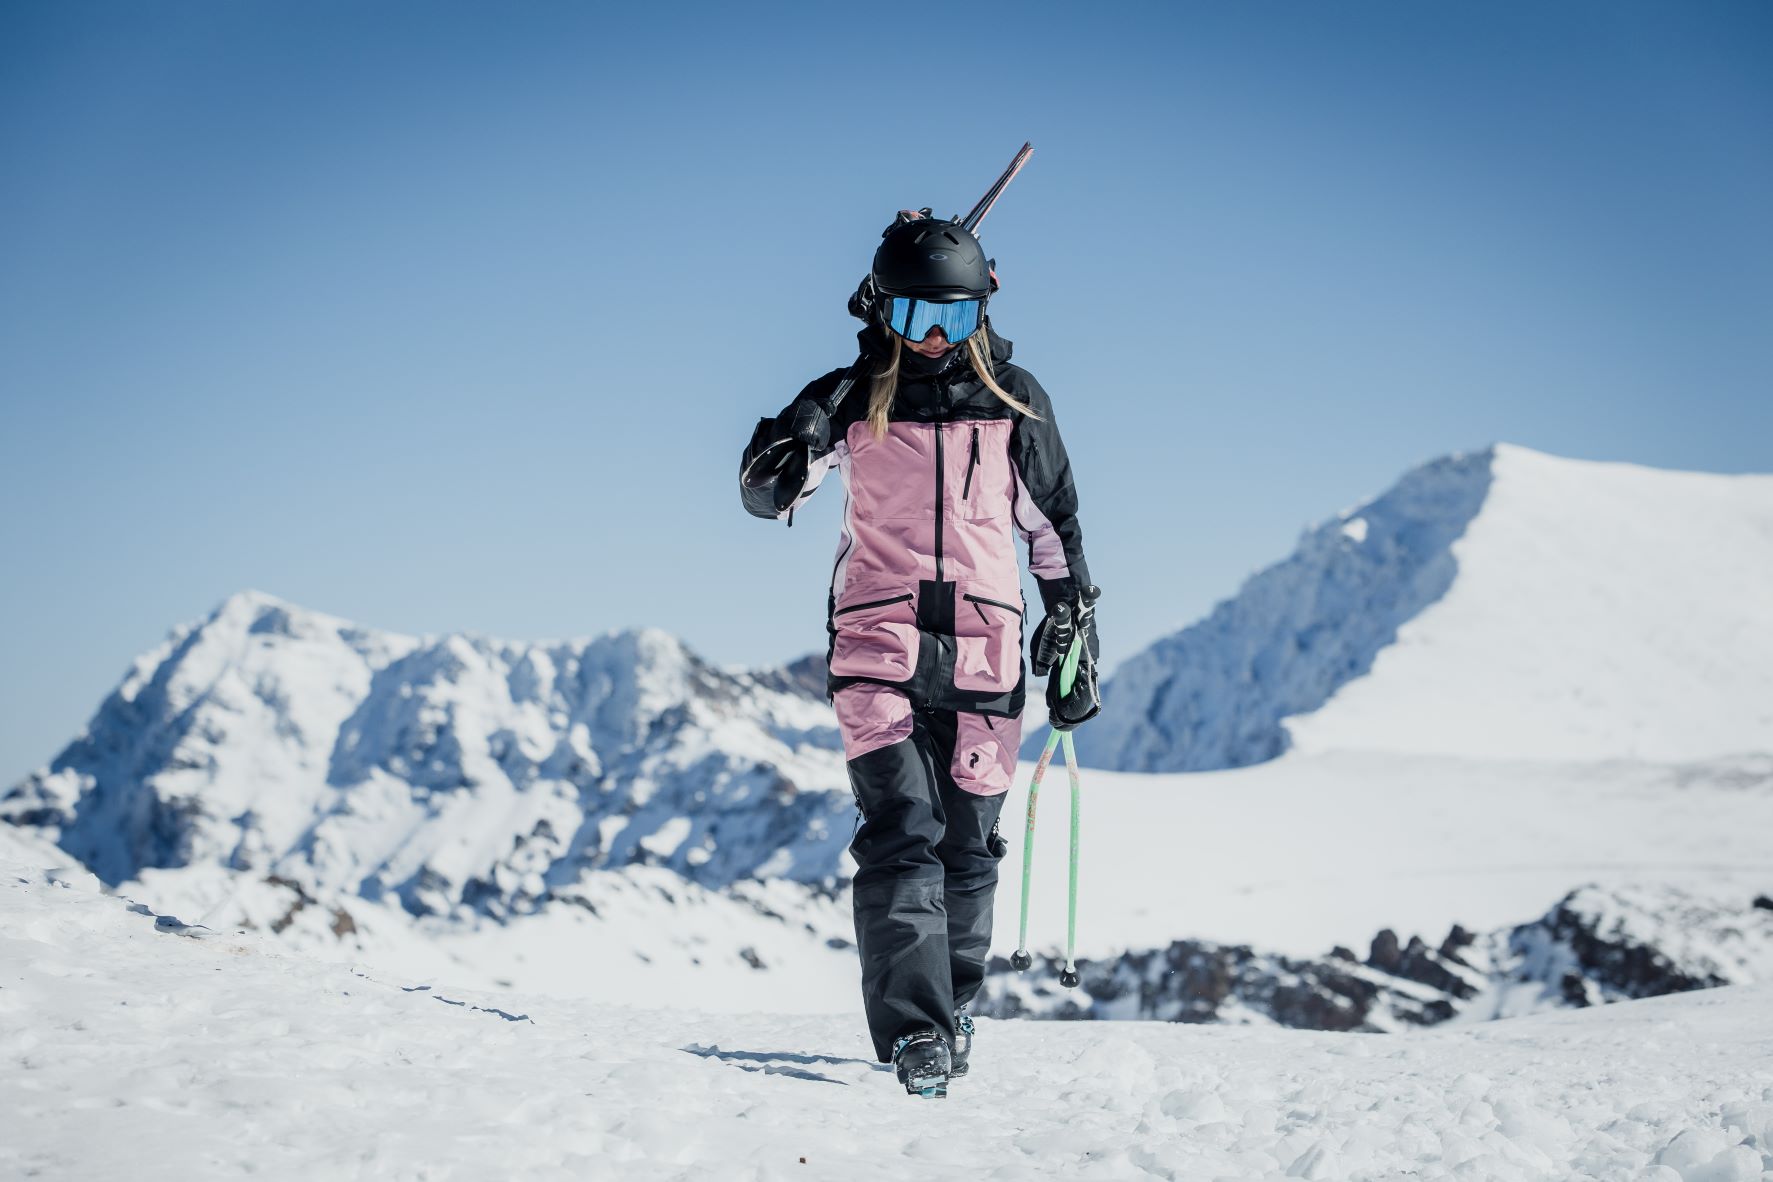 El forfait con descuento permite esquiar toda la temporada en Sierra Nevada por mil euros